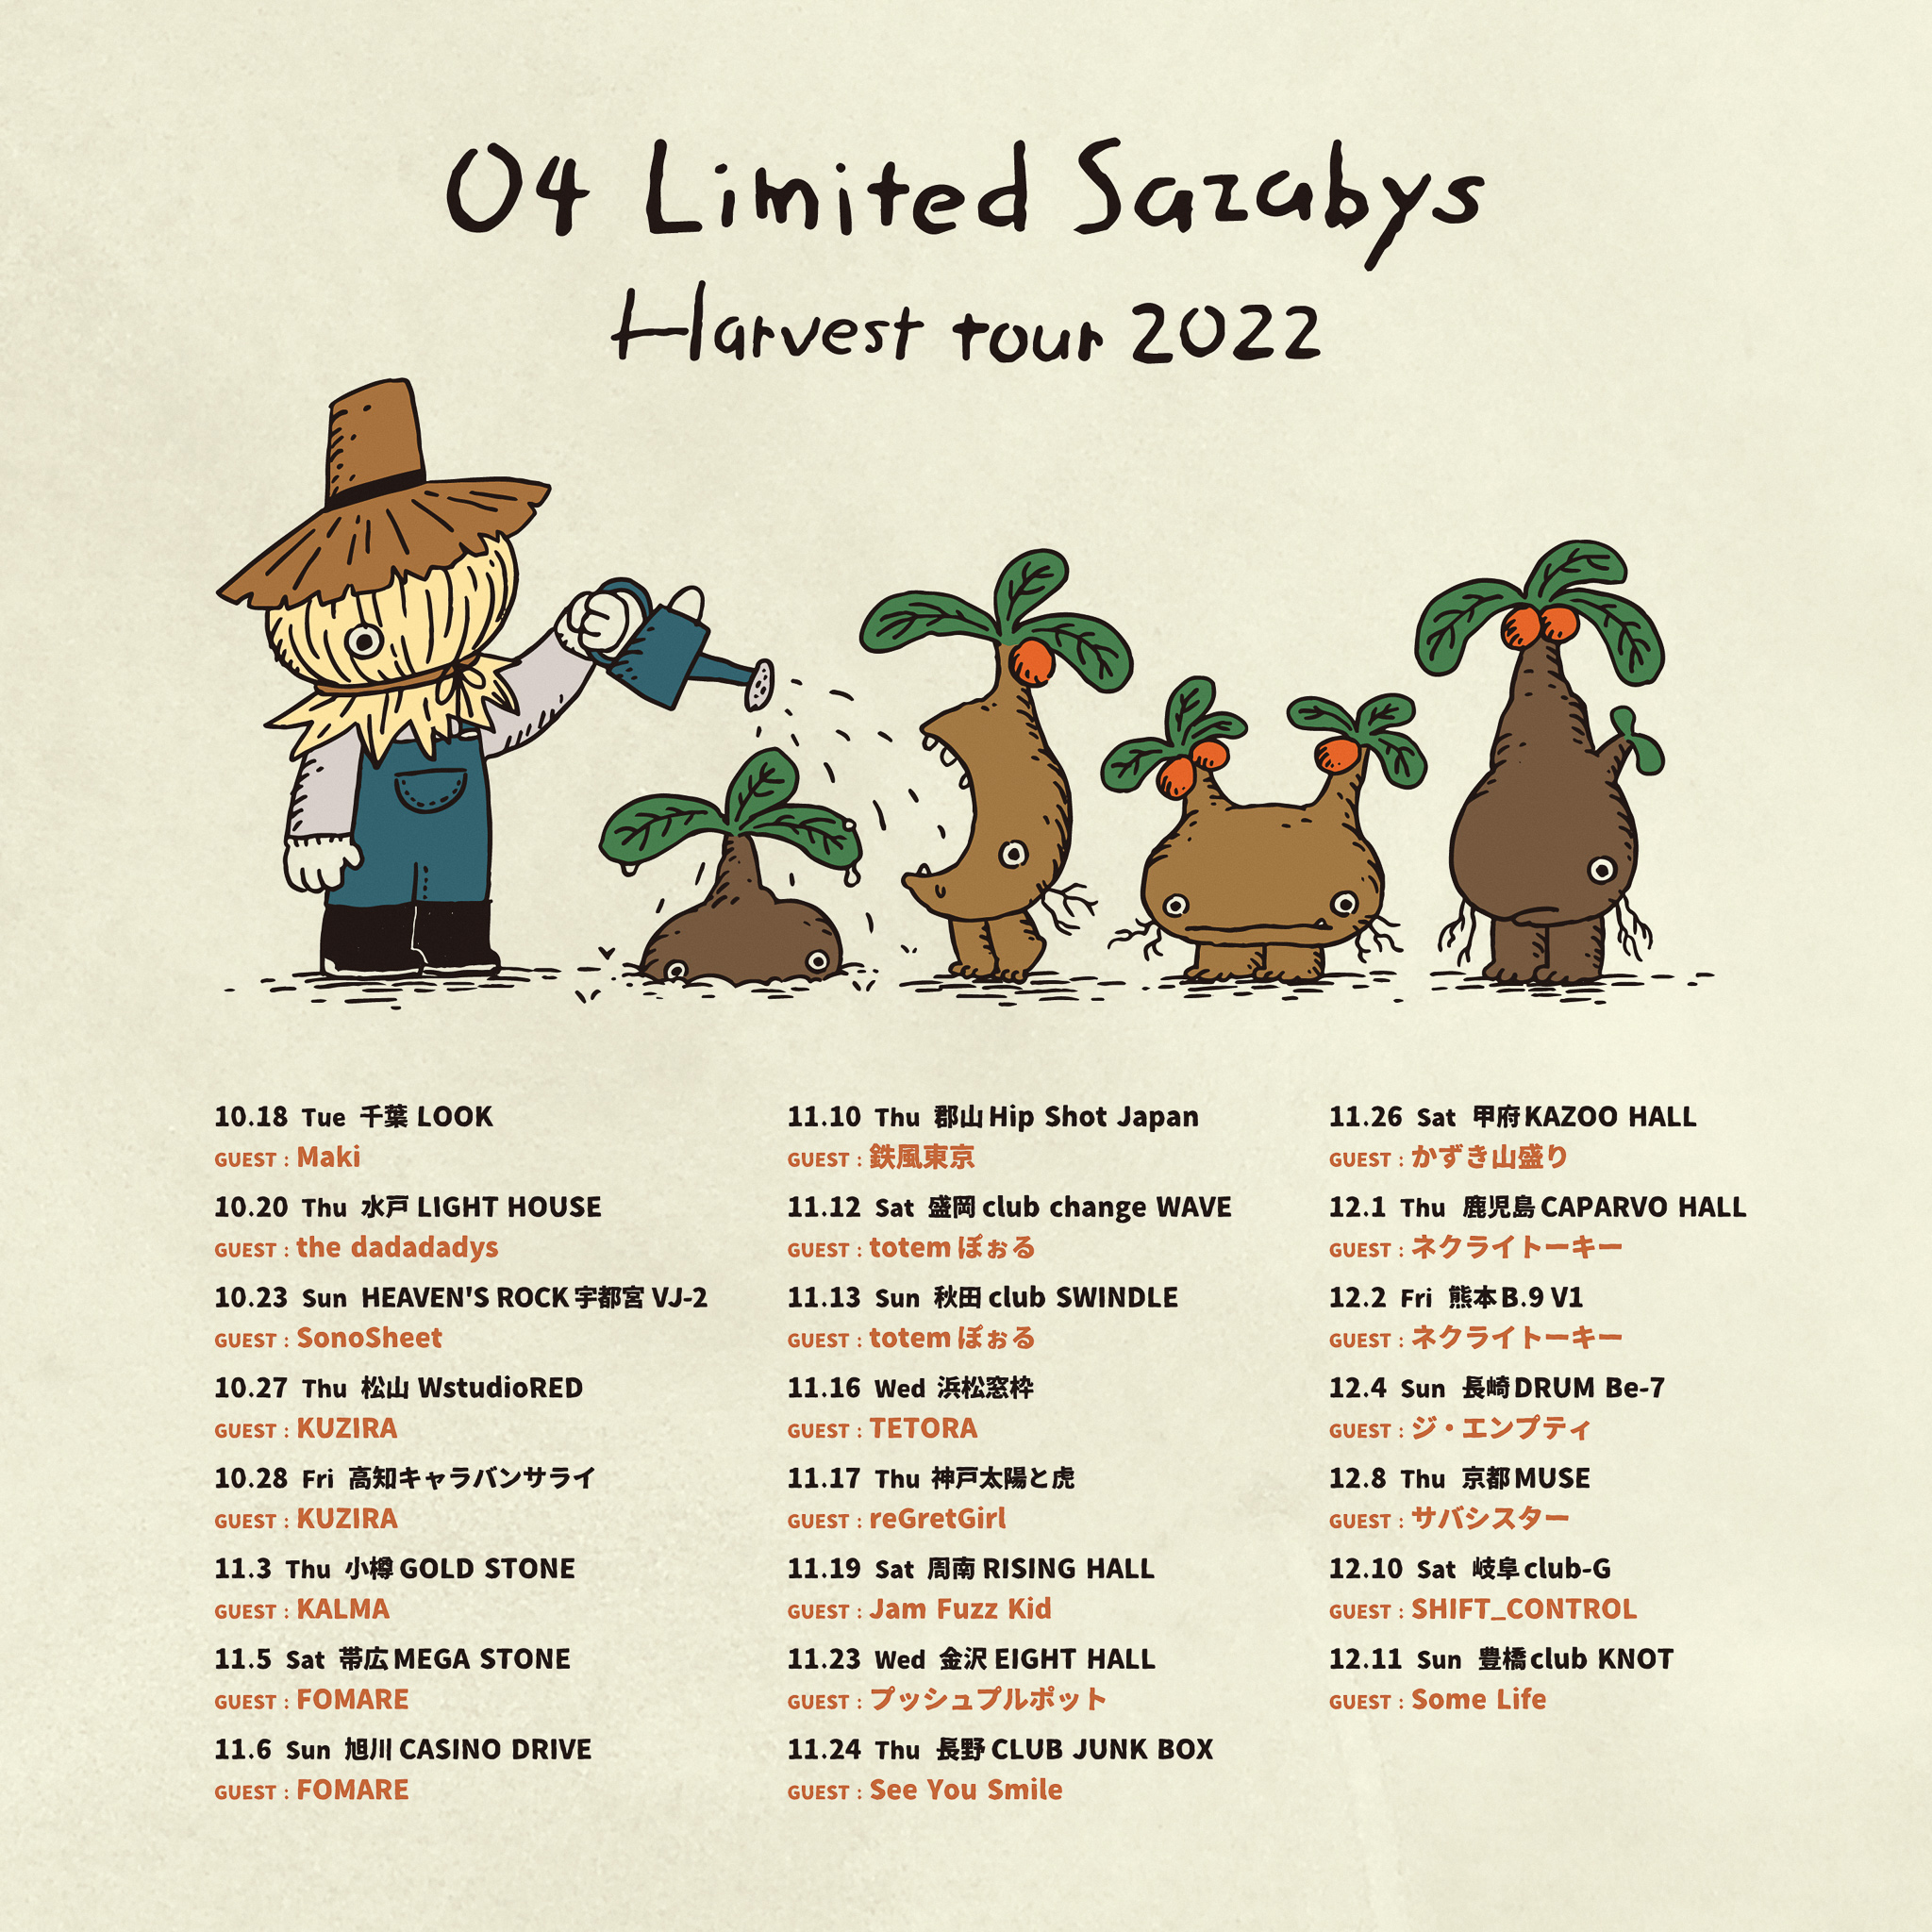 【兵庫】04 Limited Sazabys "Harvest tour 2022" (神戸太陽と虎)